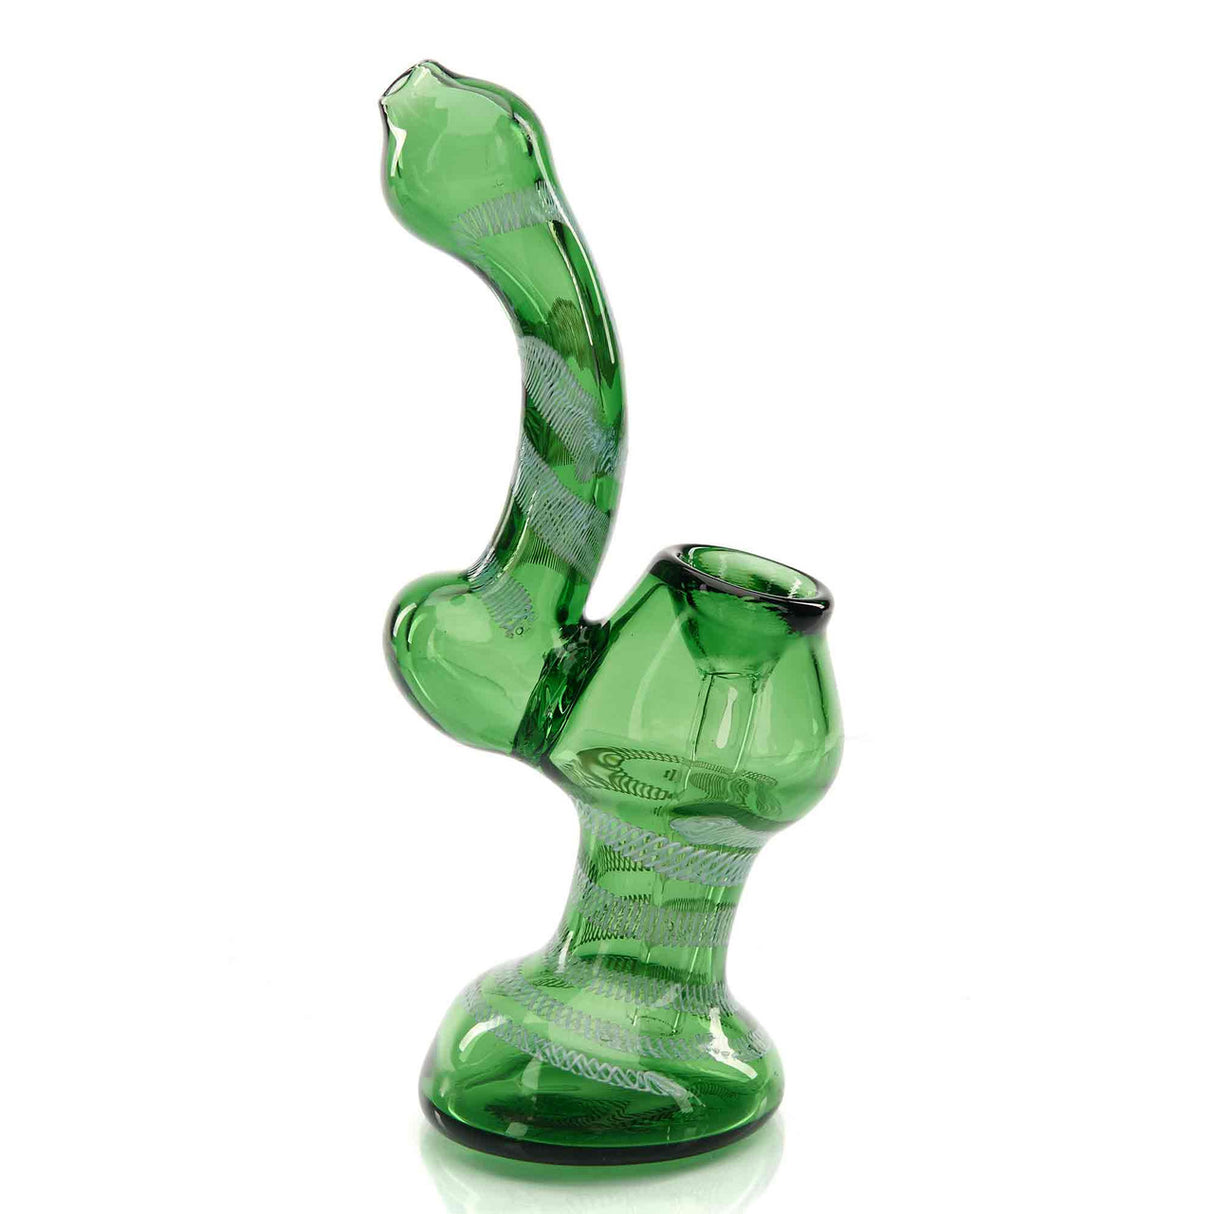 Glass Bubbler ($30 - Assorted) – CLOUD 9 SMOKE CO.